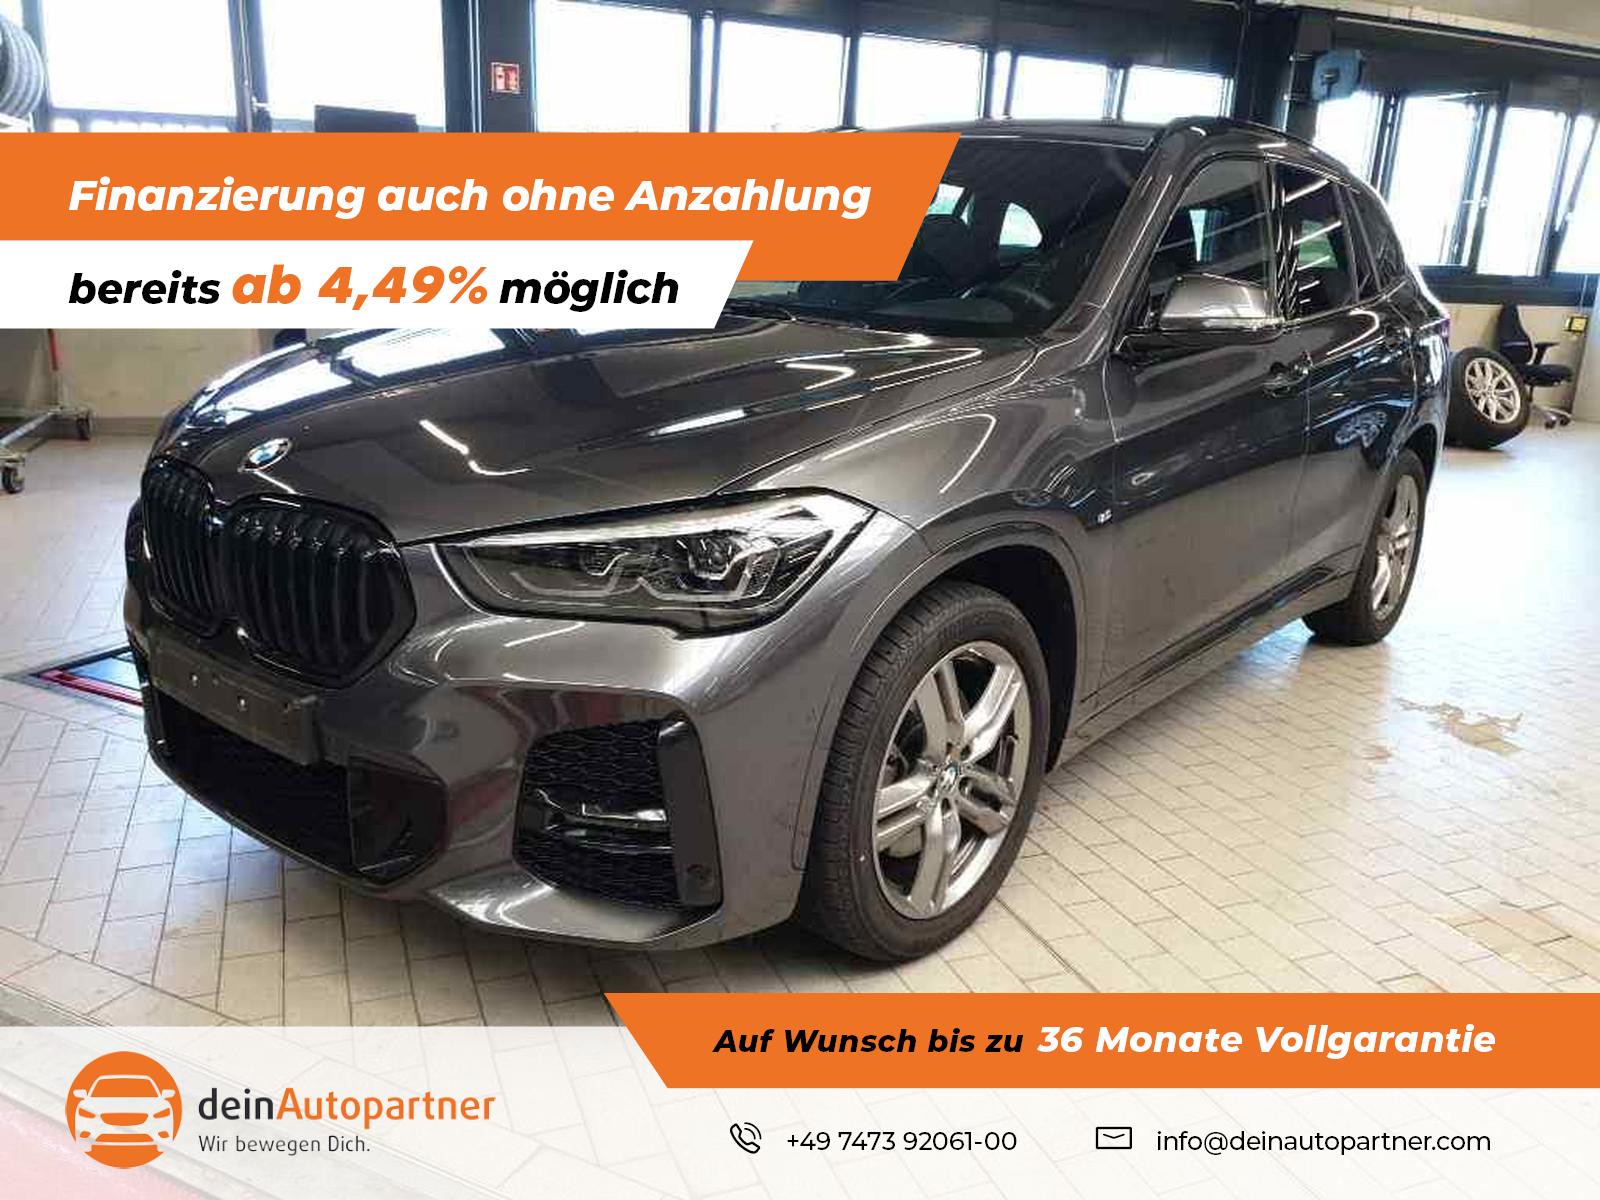 BMW X1 xDrive20d M Sport gebraucht kaufen in Mössingen Preis 35900 eur - Int .Nr.: 1871 VERKAUFT